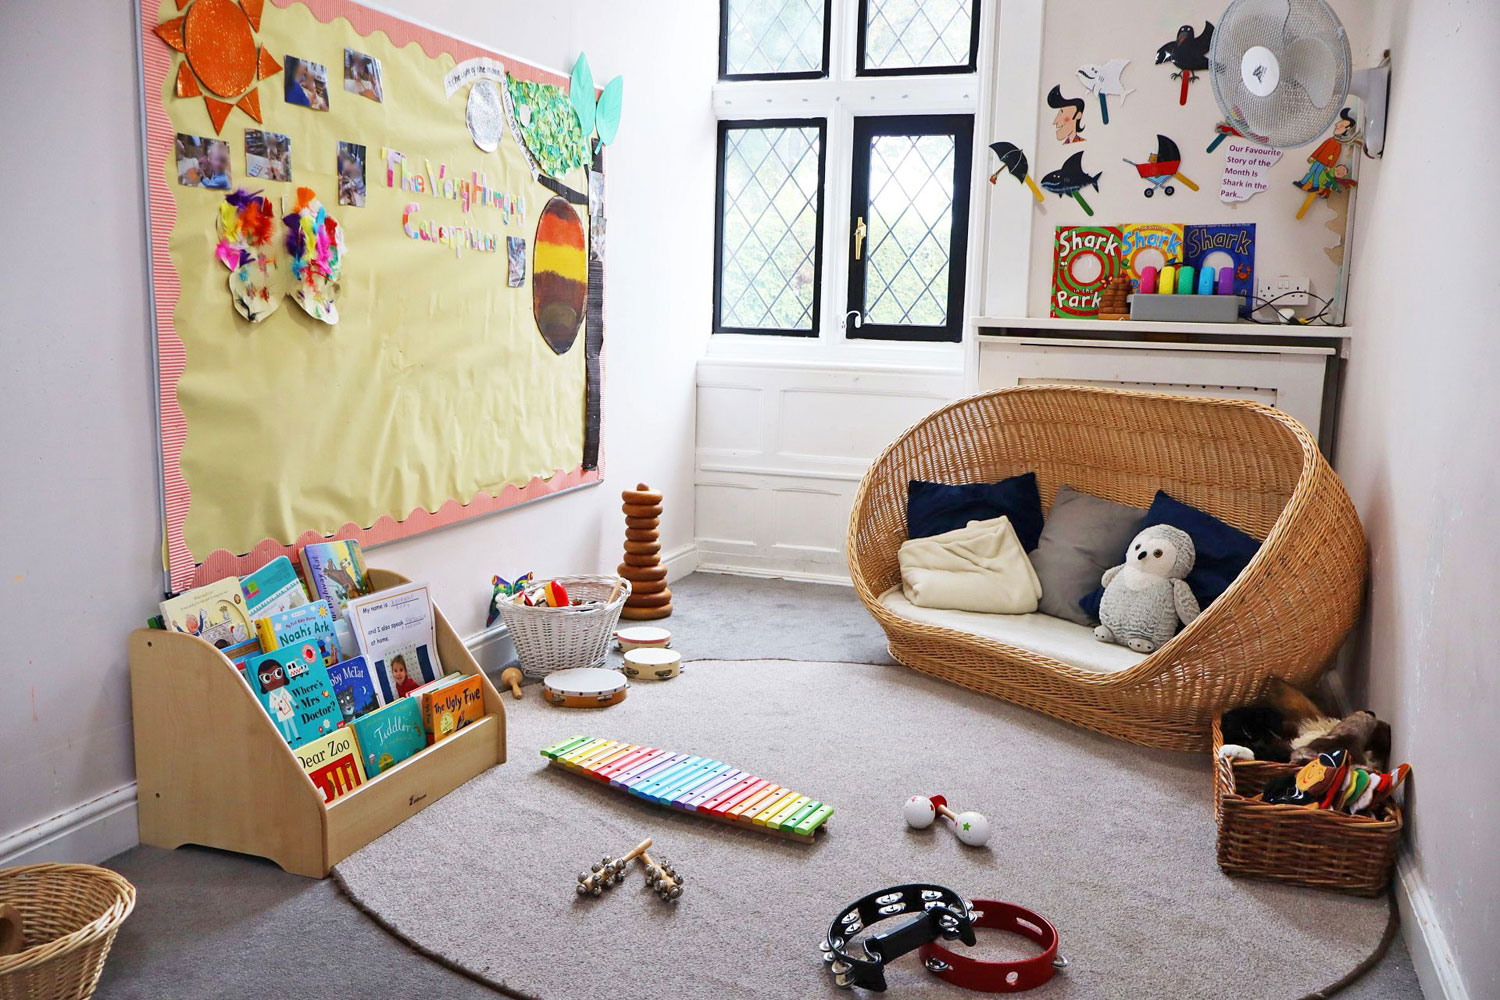 Tudor House Day Nursery and Preschool baby room